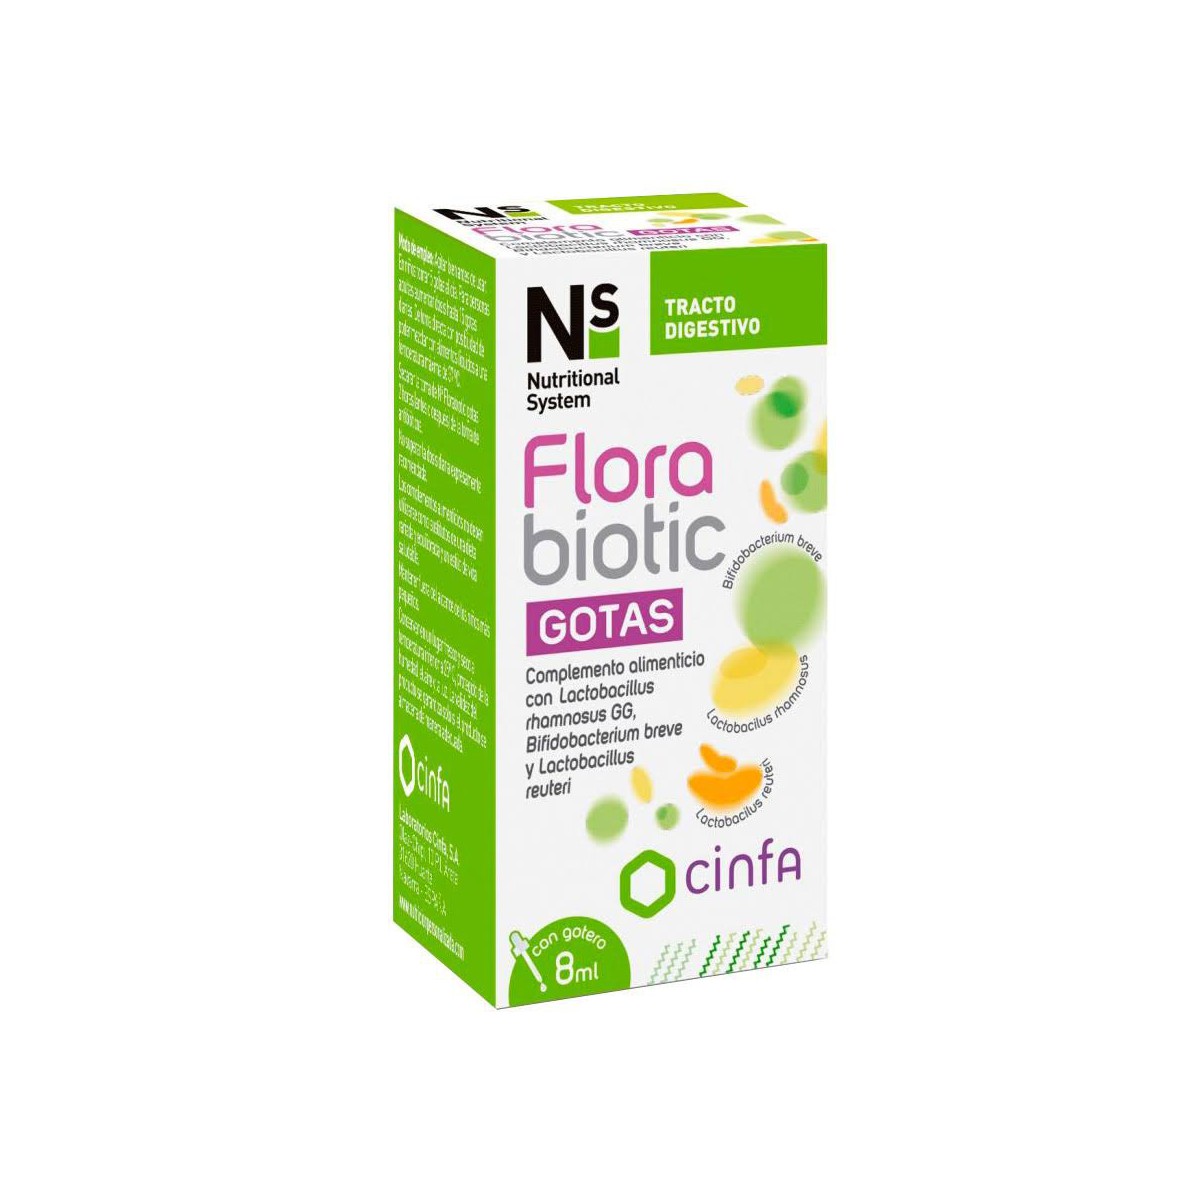 NS Florabiotic Gotas 8 ml